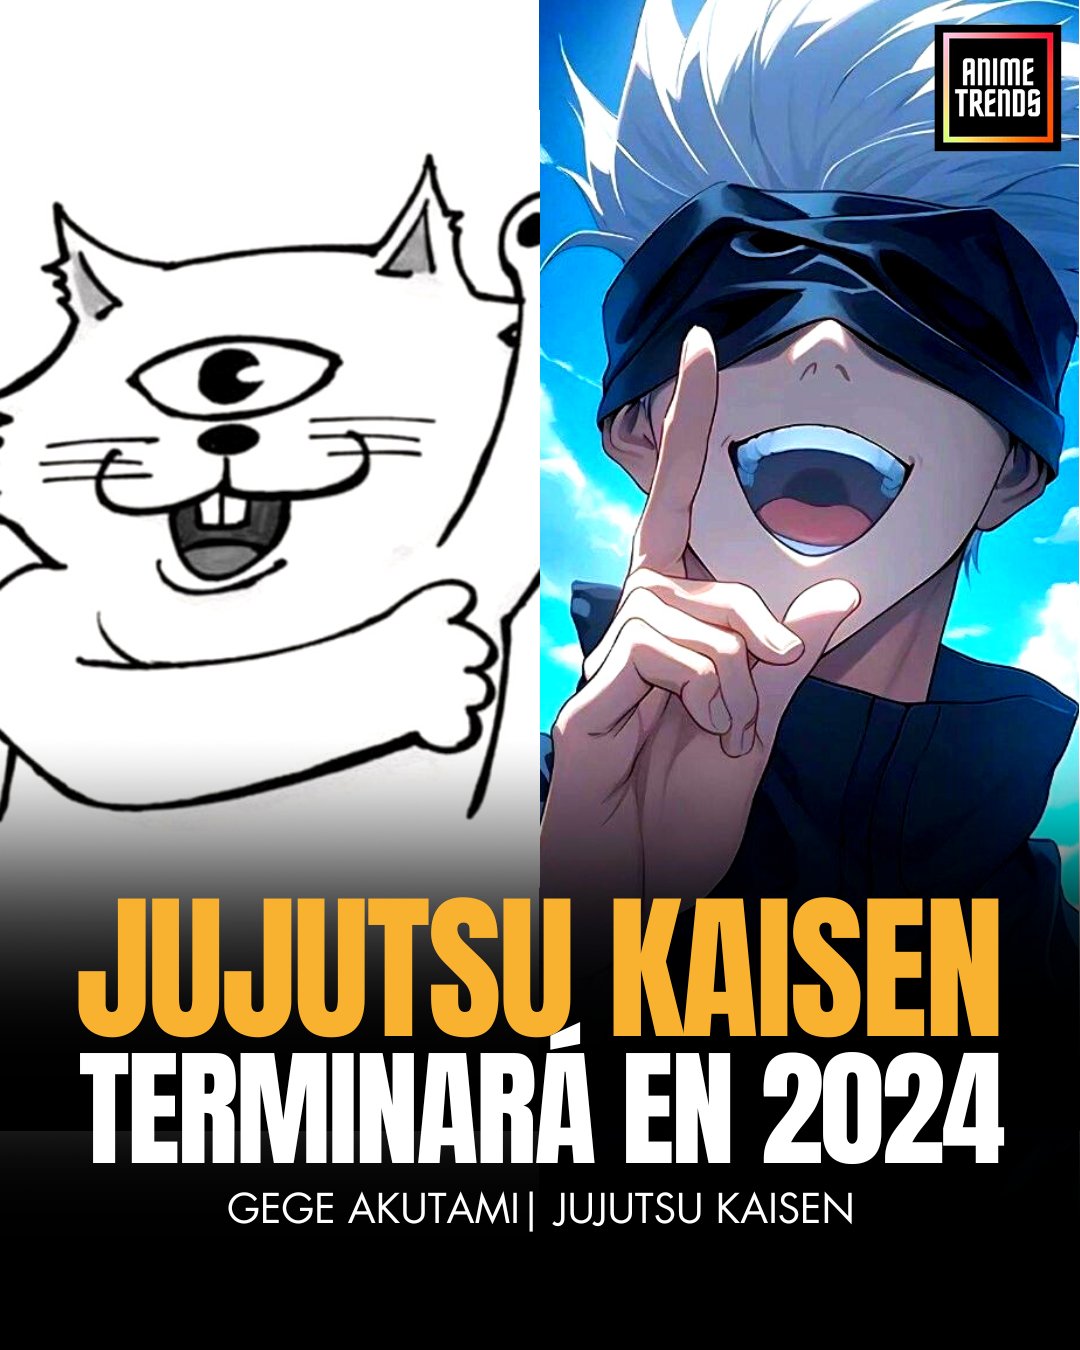 Animetrends - ¡ES OFICIAL! JIGOKURAKU anuncia de manera oficial